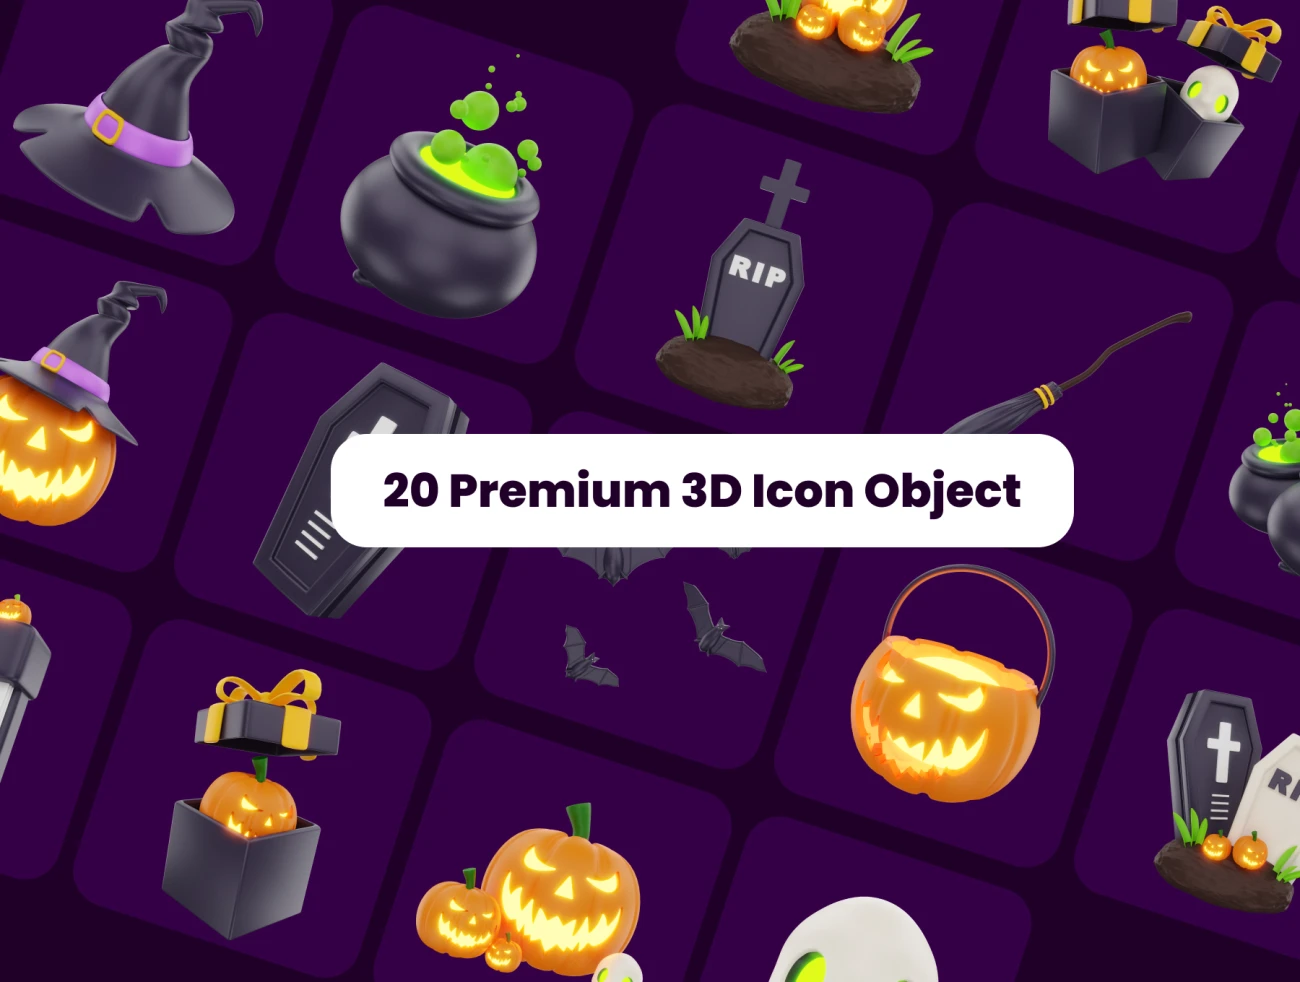 20款万圣节3D图标模型 3D Halloween Icon Set Pack .blender .psd-3D/图标-到位啦UI